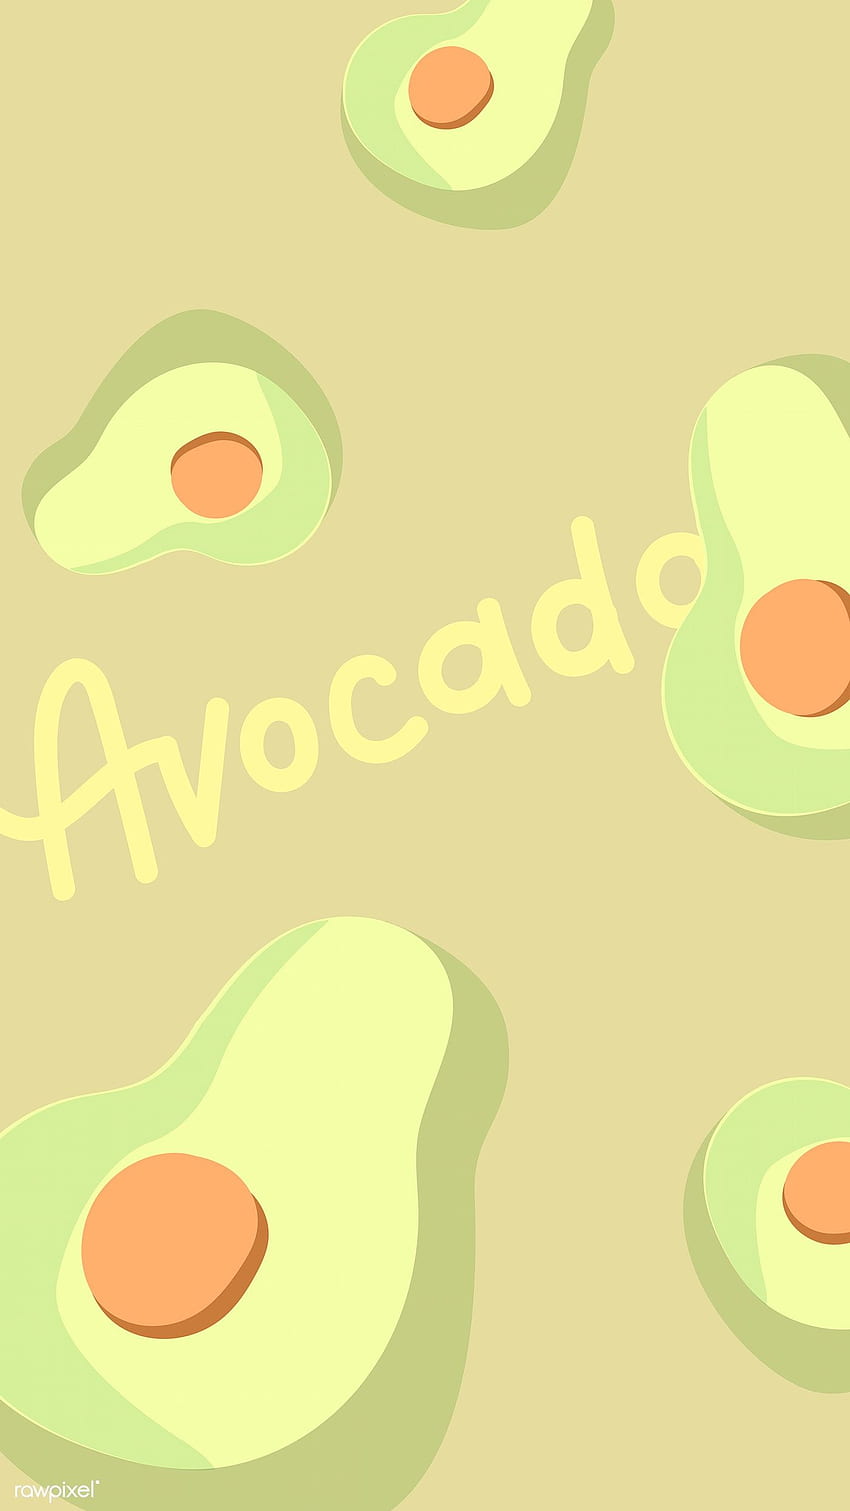 Avocado: Với hình ảnh bắt mắt và tươi trẻ của trái bơ, hấp dẫn người xem đến khám phá về những công dụng tuyệt vời của loại quả này cho sức khoẻ cơ thể.